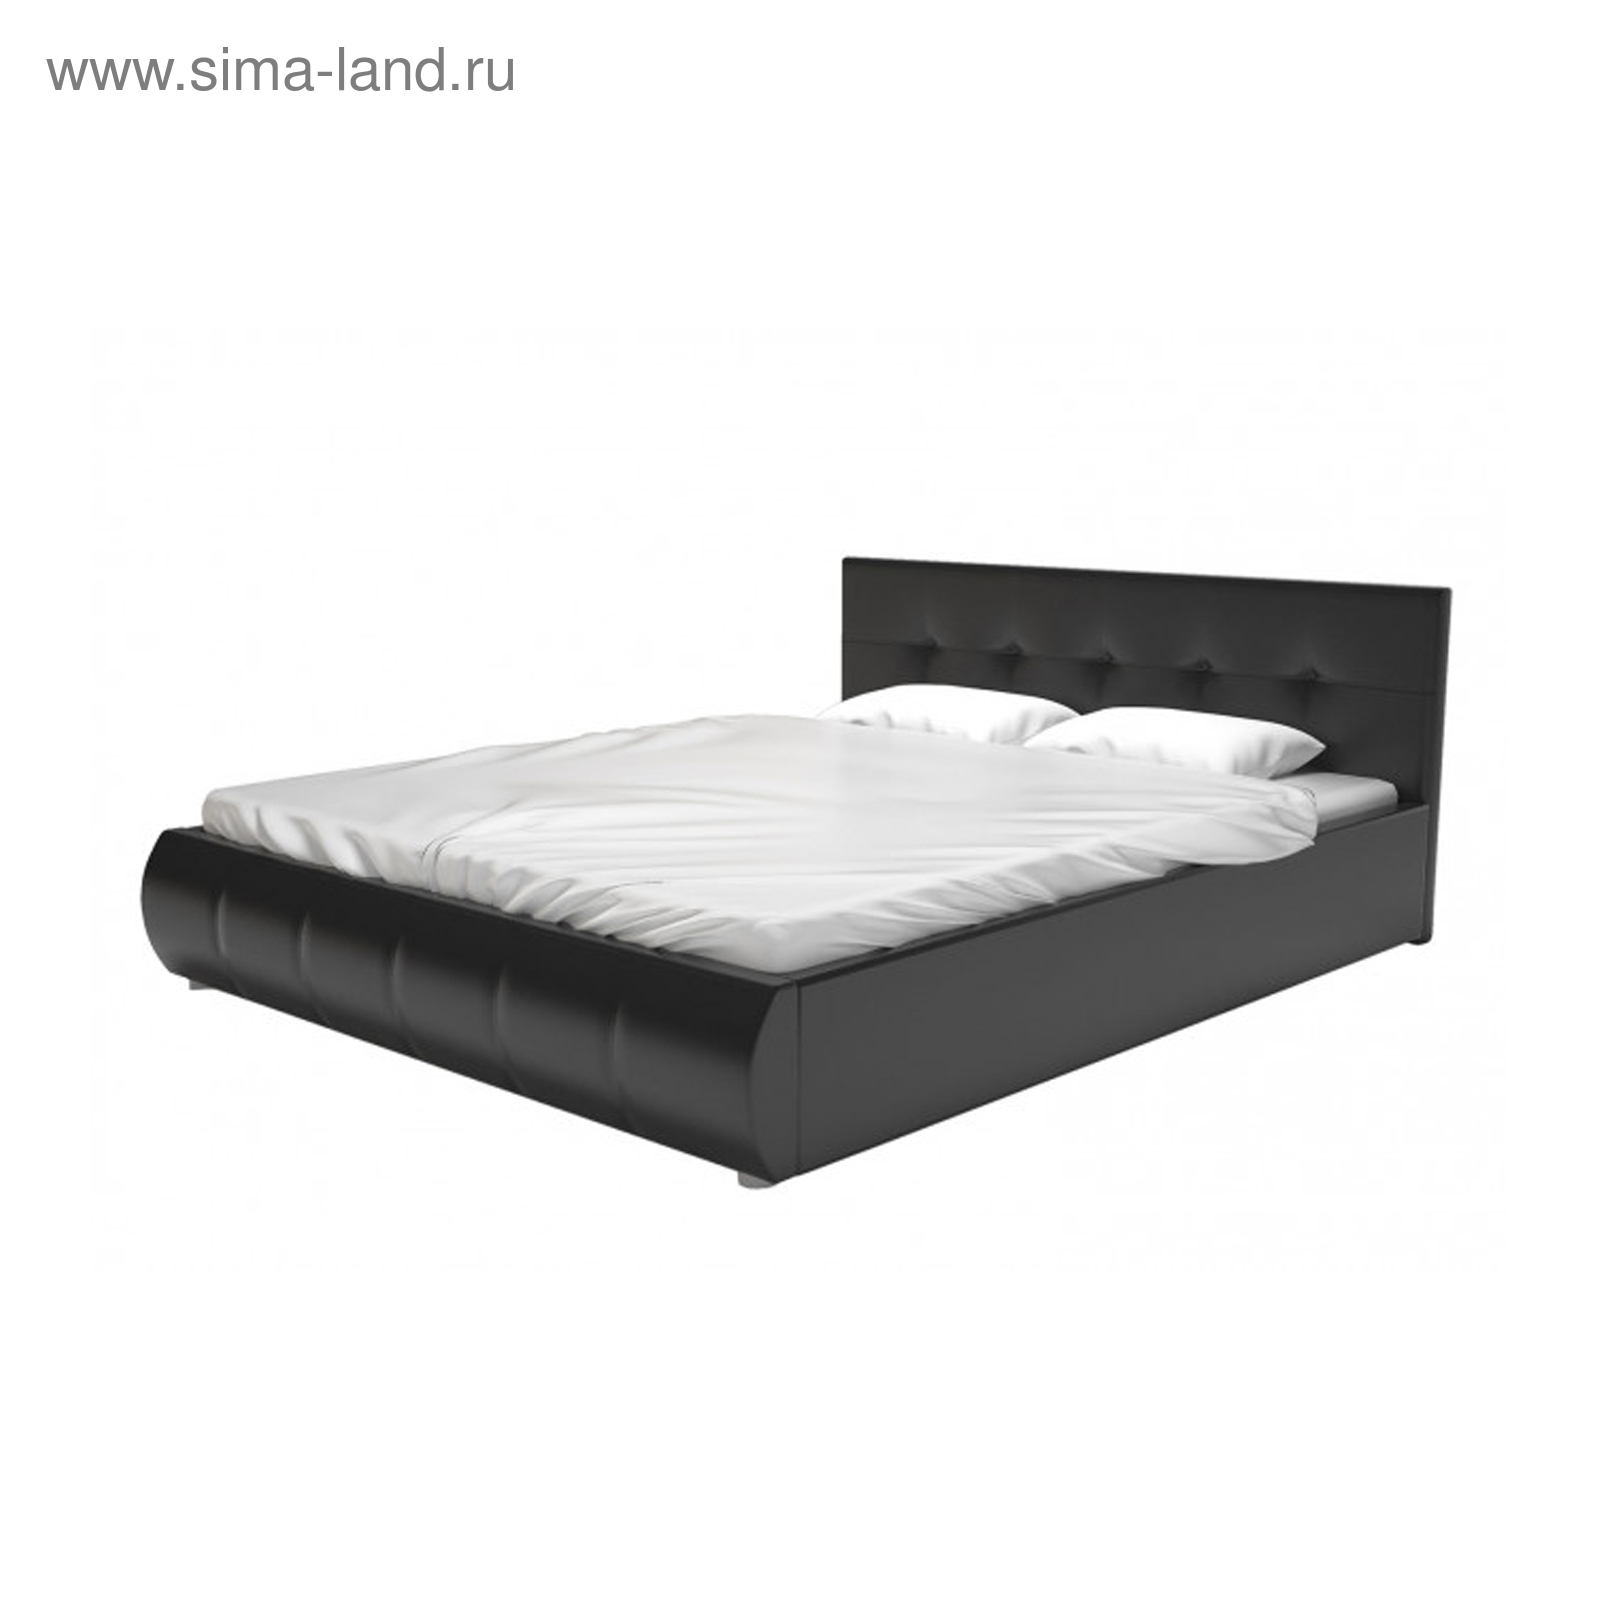 Кровать с подъёмным механизмом Mila 140х200 см фабрика